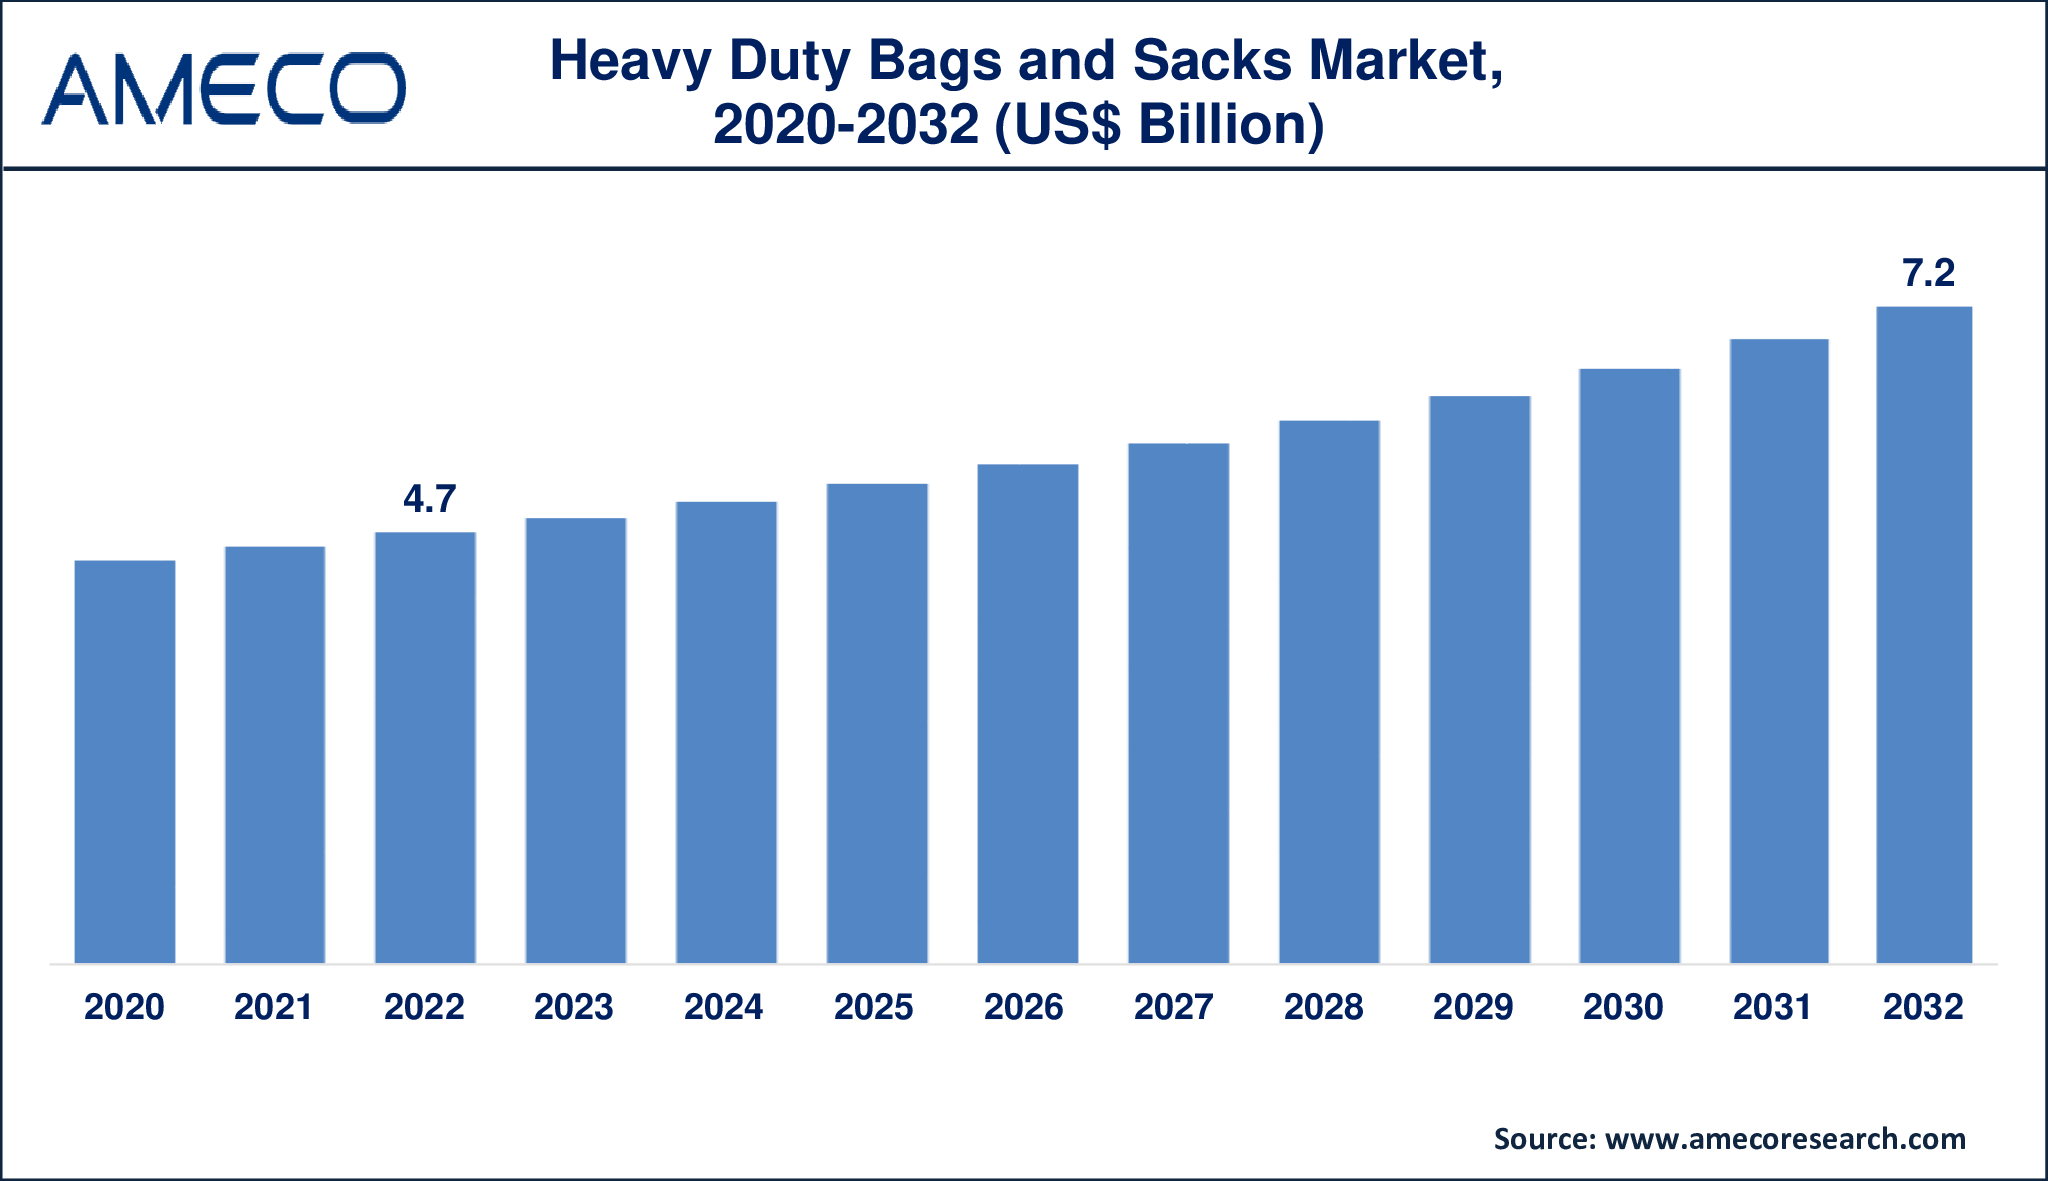 Heavy Duty Bags and Sacks Market Dynamics